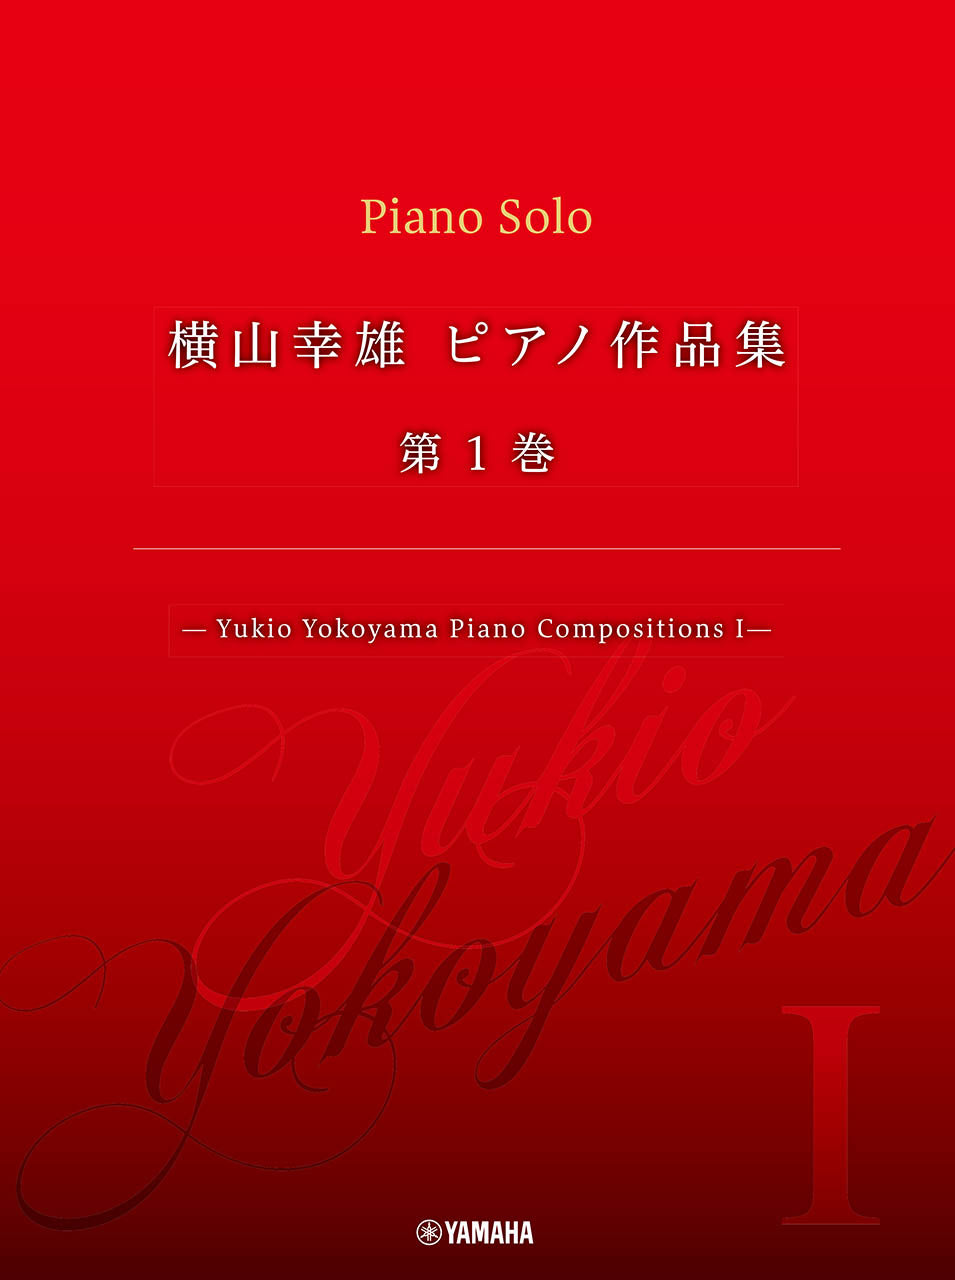 ショパン ピアノ作品全曲集 16巻 セット - クラシック